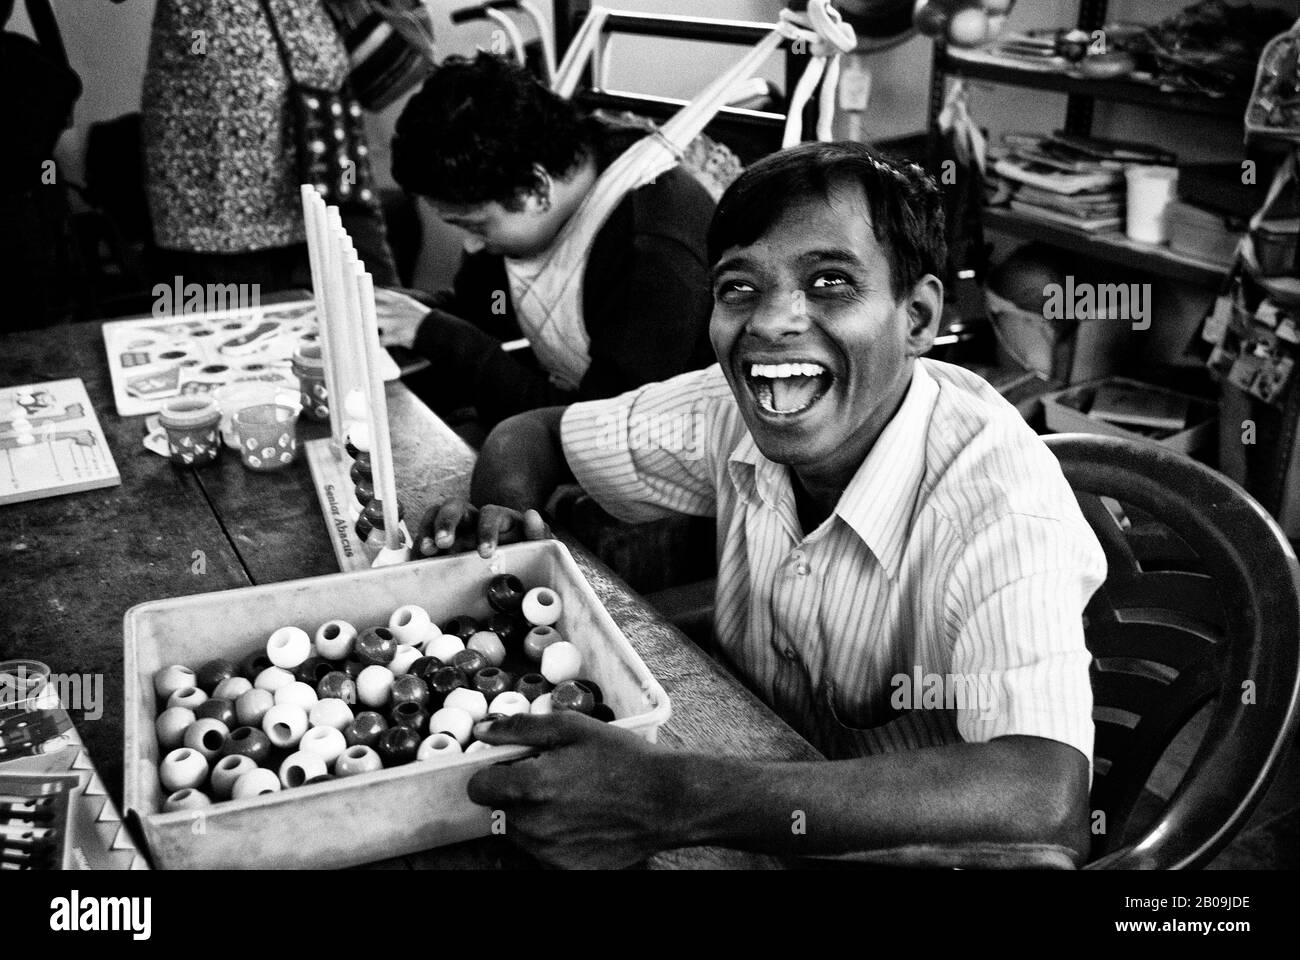 Kumar, affecté par la paralysie cérébrale est principalement de bonne humeur et très amical même avec les étrangers. Association des parents de personnes atteintes de paralysie cérébrale et de troubles Associés (PAPPA) à Bangalore, en Inde. 21 Janvier 2009. Un des jeux d'images de l'histoire de la photo Cerebral Palsy, par Ayush Ranka. Banque D'Images